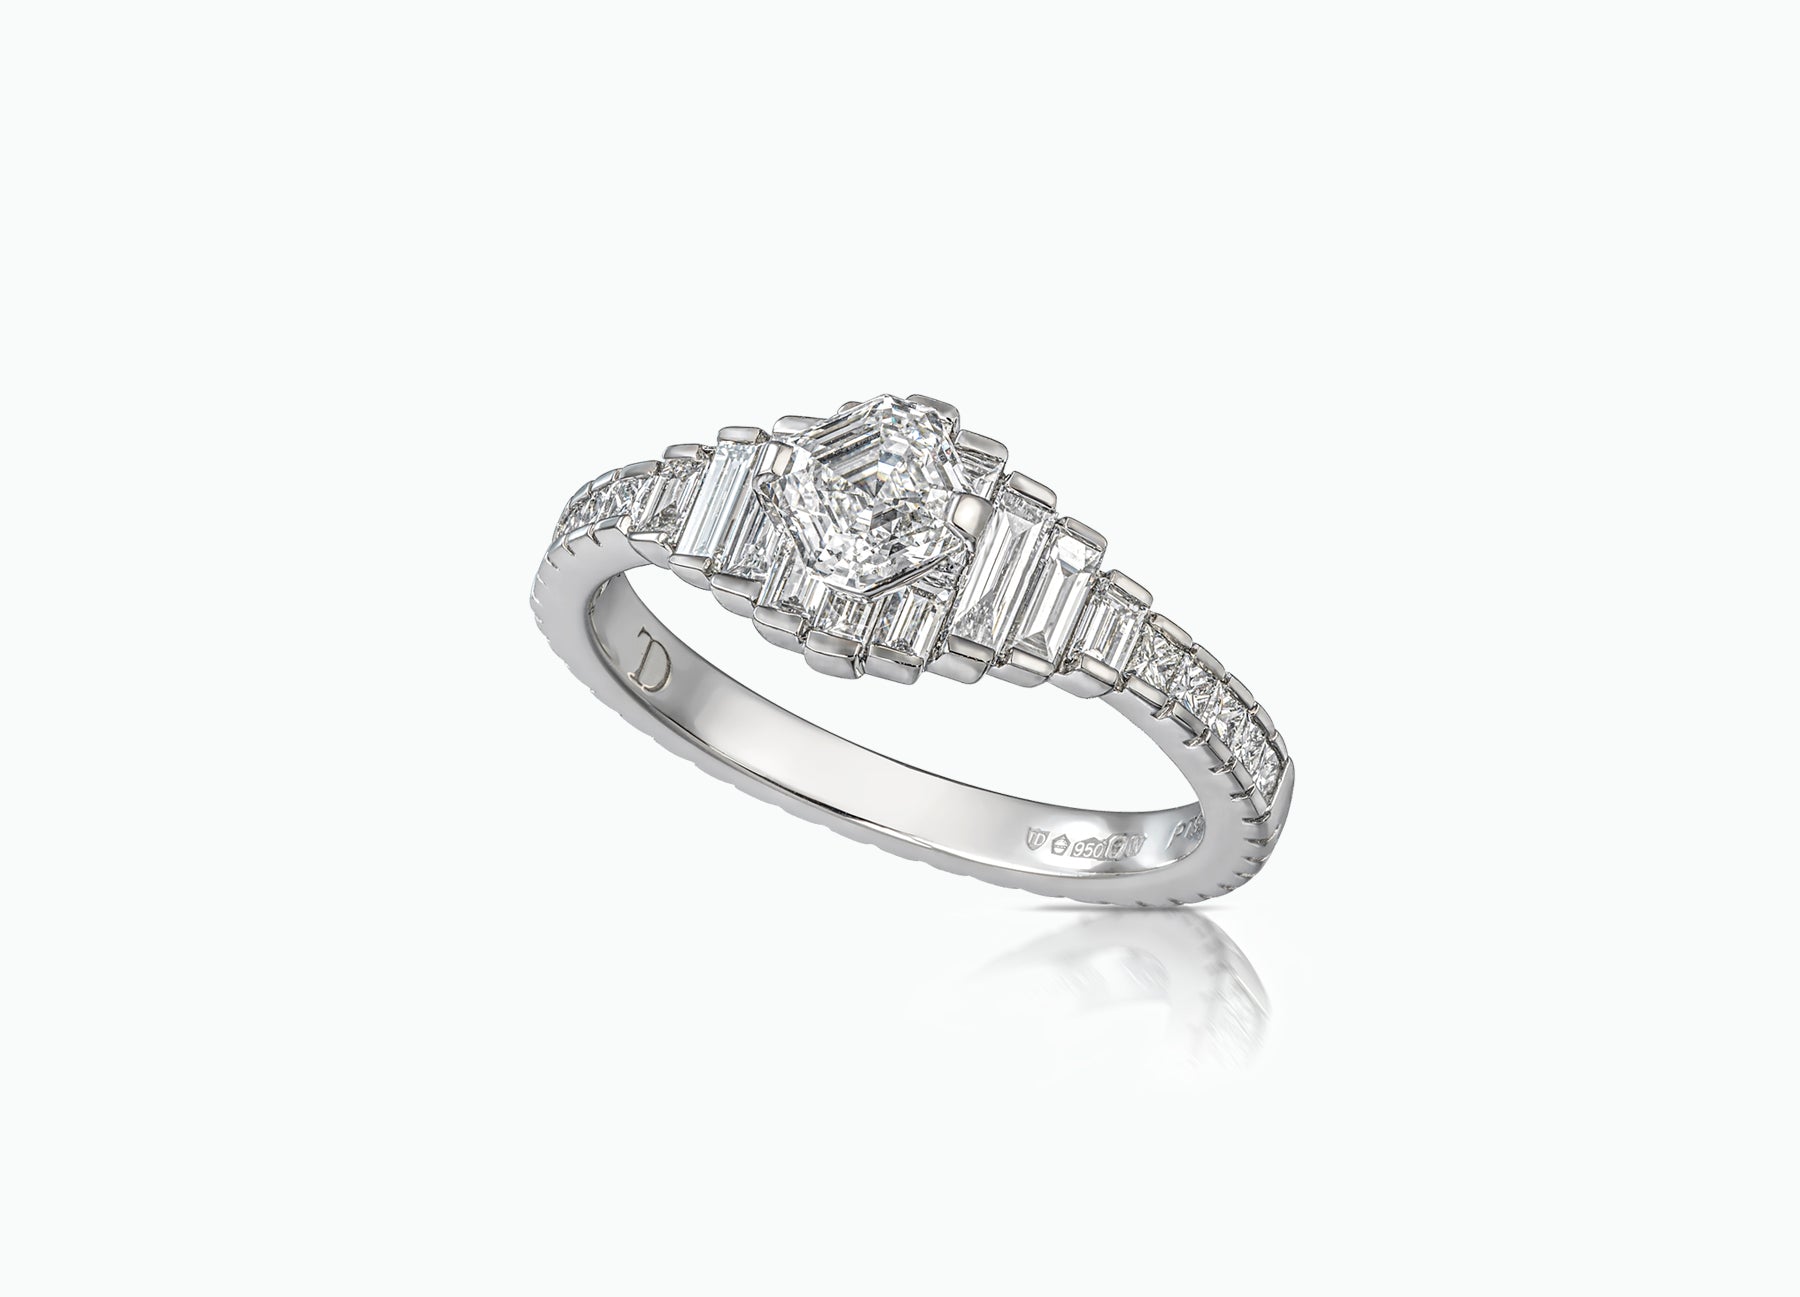 Diadem diamond engagement ring with an Asscher cut centre diamond by Tomasz Donocik Side View